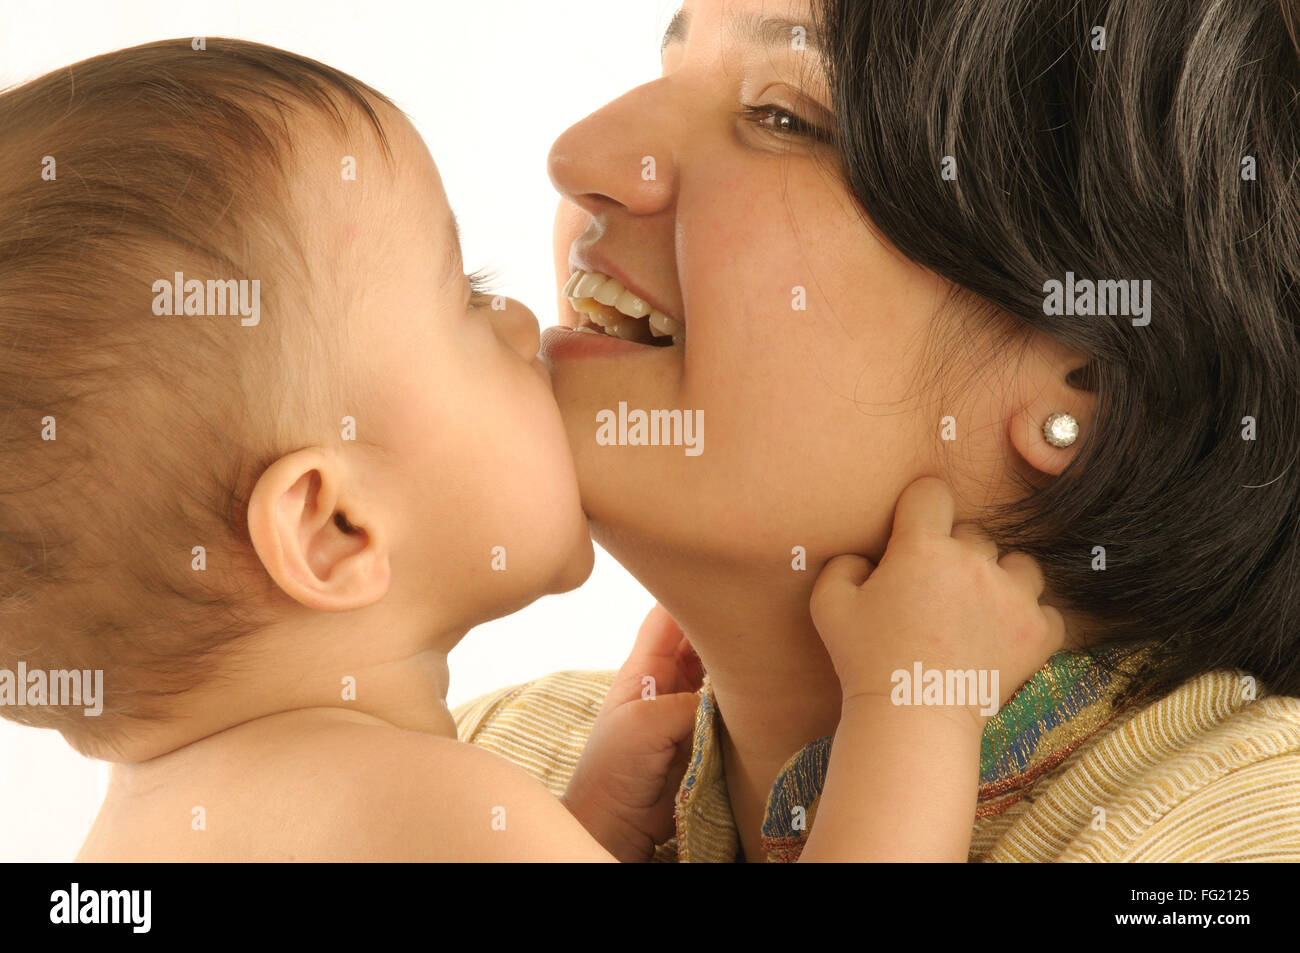 Mère avec un an baby boy essayer de mordre son menton M.# 592 29 Mars 2008 Banque D'Images